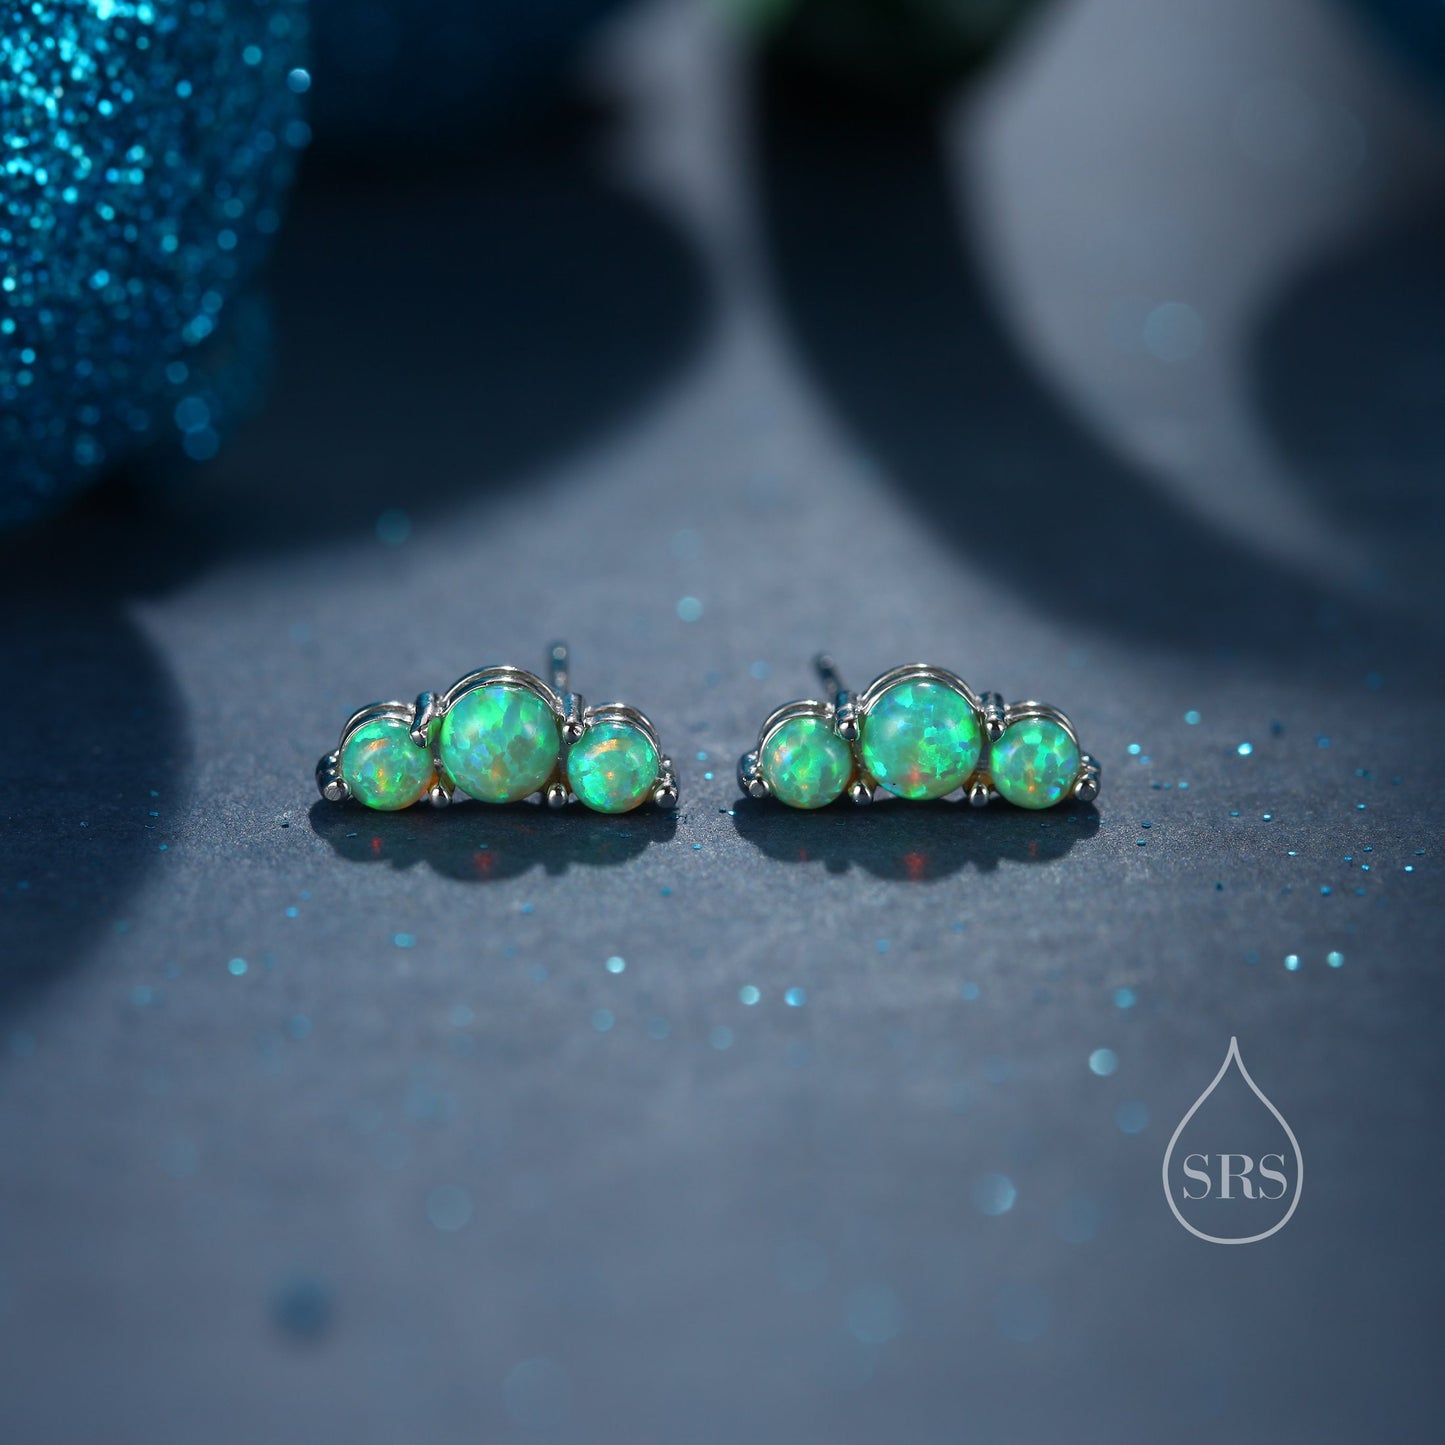 Tiny Green Opal Trio Stud Earrings in Sterling Silver, Silver or Gold,  Three Opal Earrings, Opal Stud, Small Opal Earrings